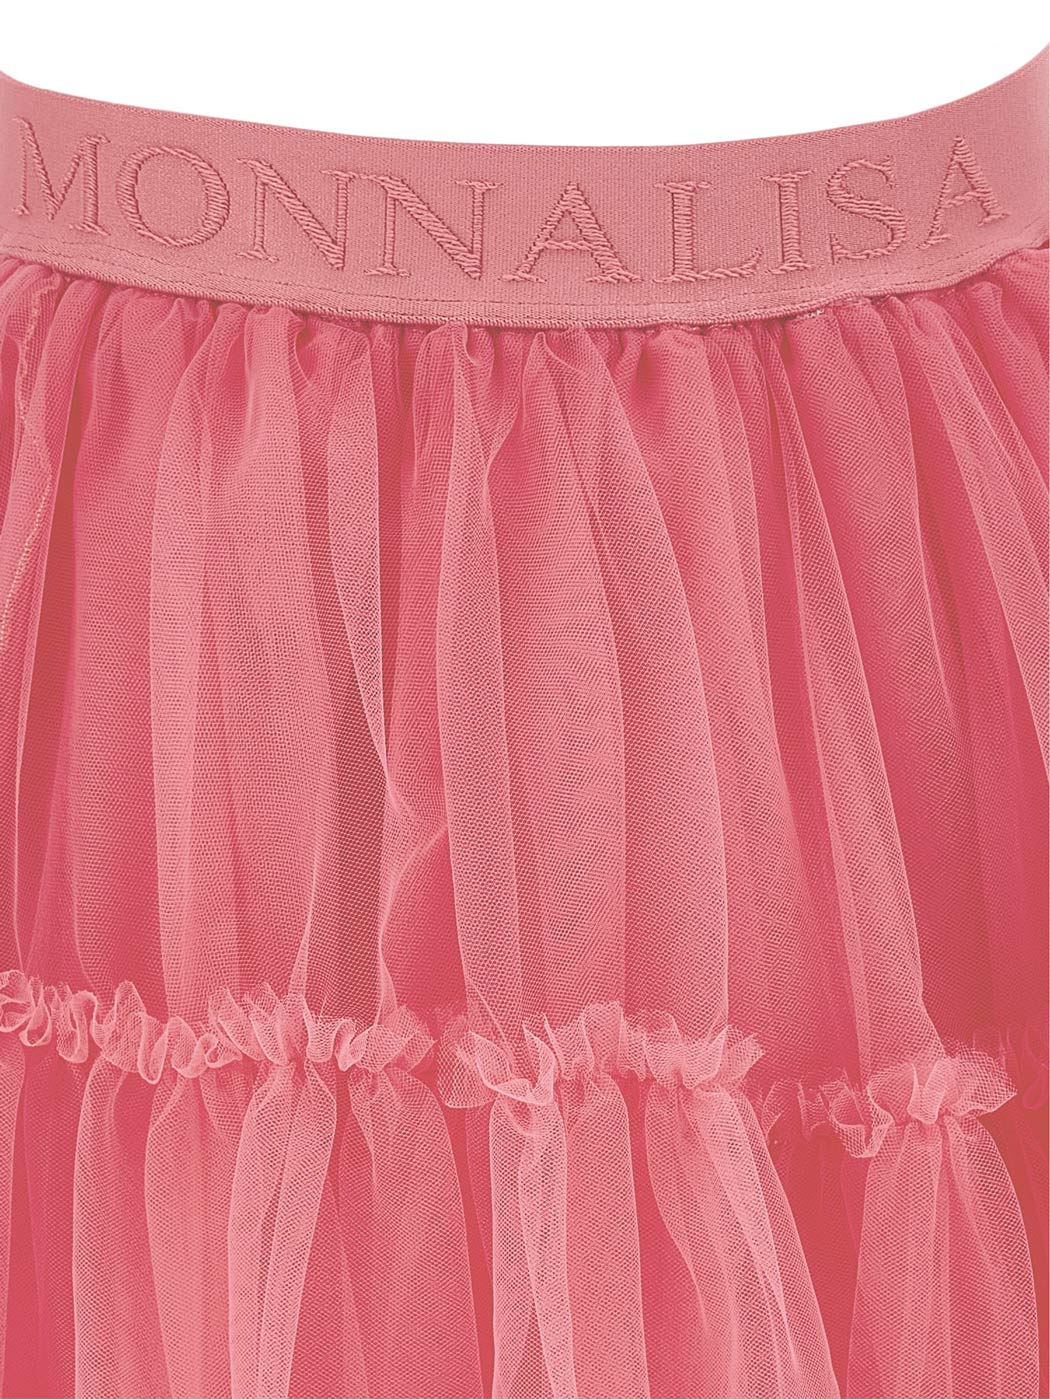 MONNALISA Φούξια Τούλινη Φούστα για κορίτσι-17BGON